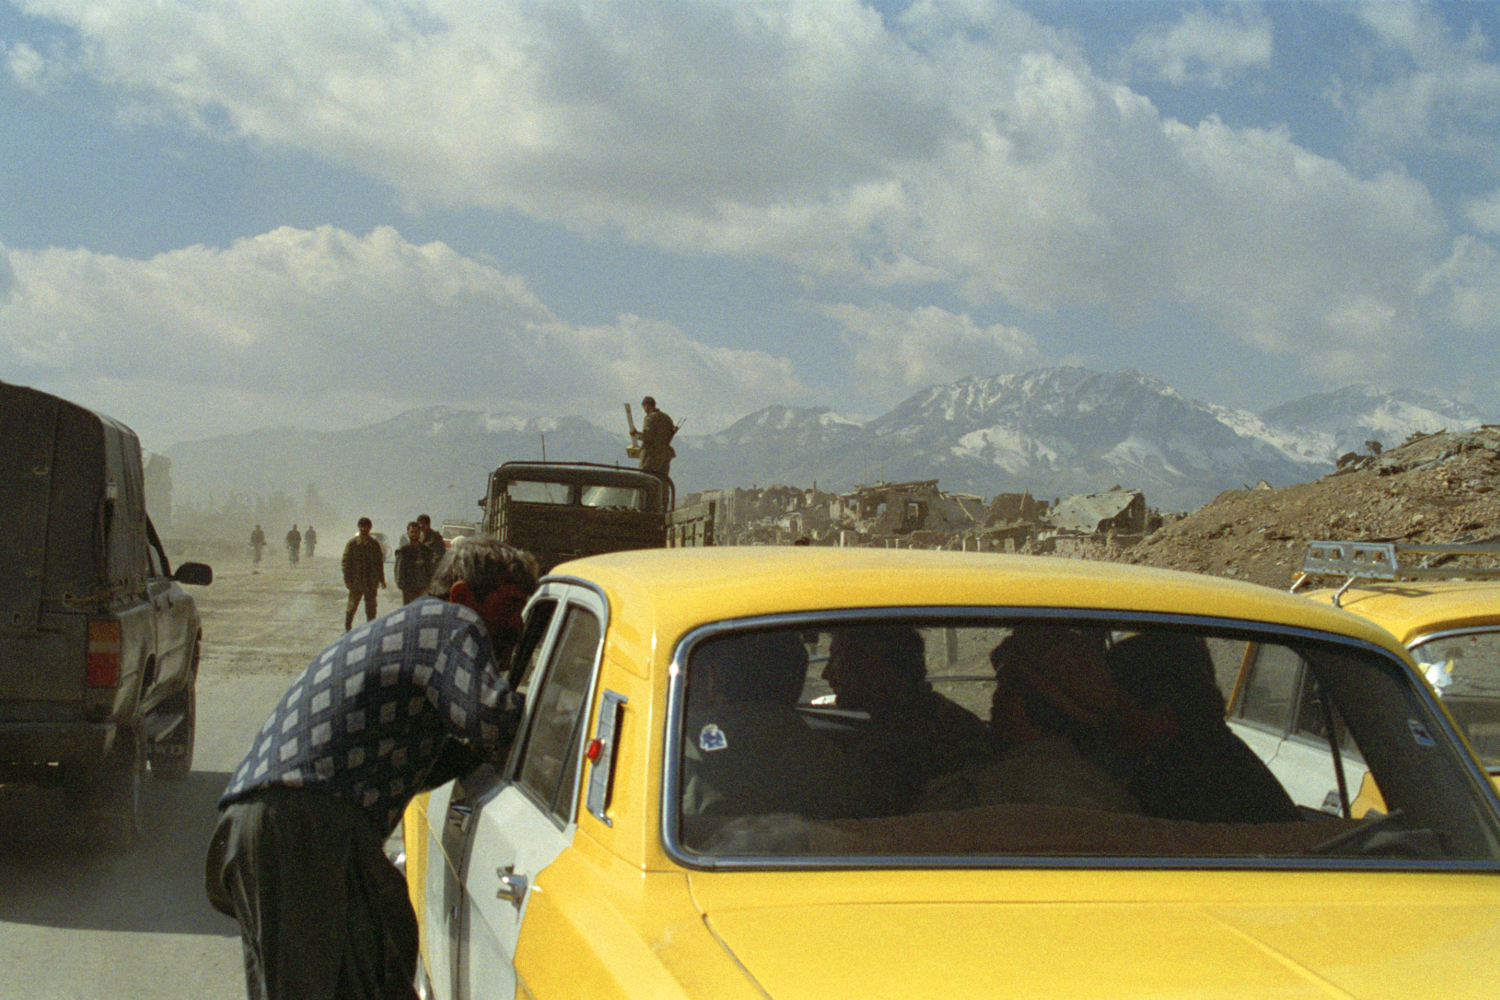 Robert Knoth & Antoinette de Jong Poppy - Trails of Afghan Heroin, 2012